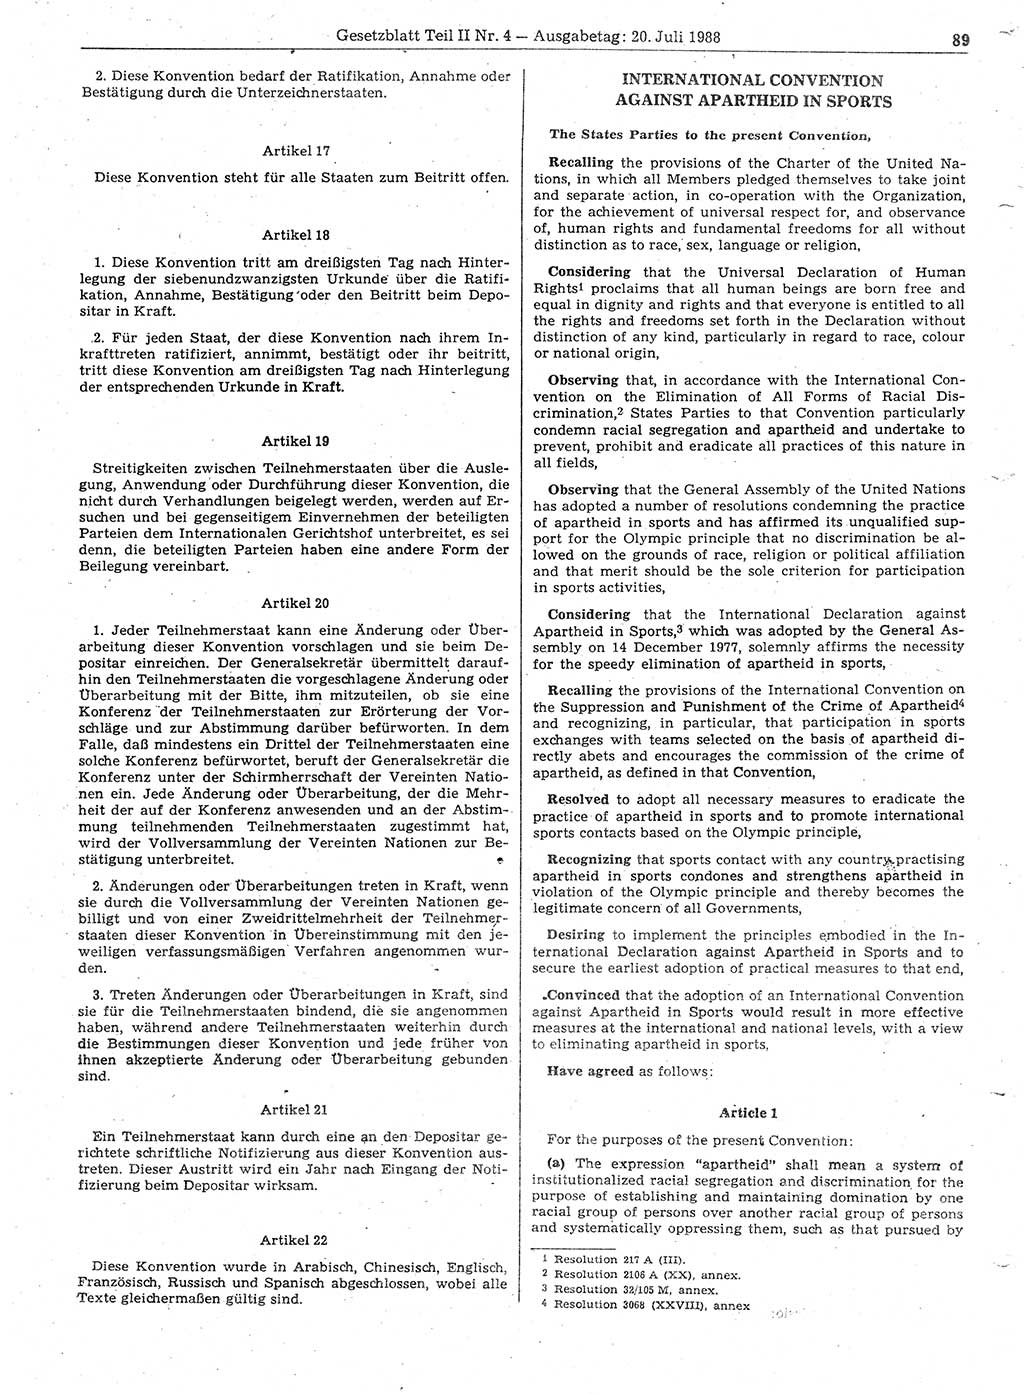 Gesetzblatt (GBl.) der Deutschen Demokratischen Republik (DDR) Teil ⅠⅠ 1988, Seite 89 (GBl. DDR ⅠⅠ 1988, S. 89)